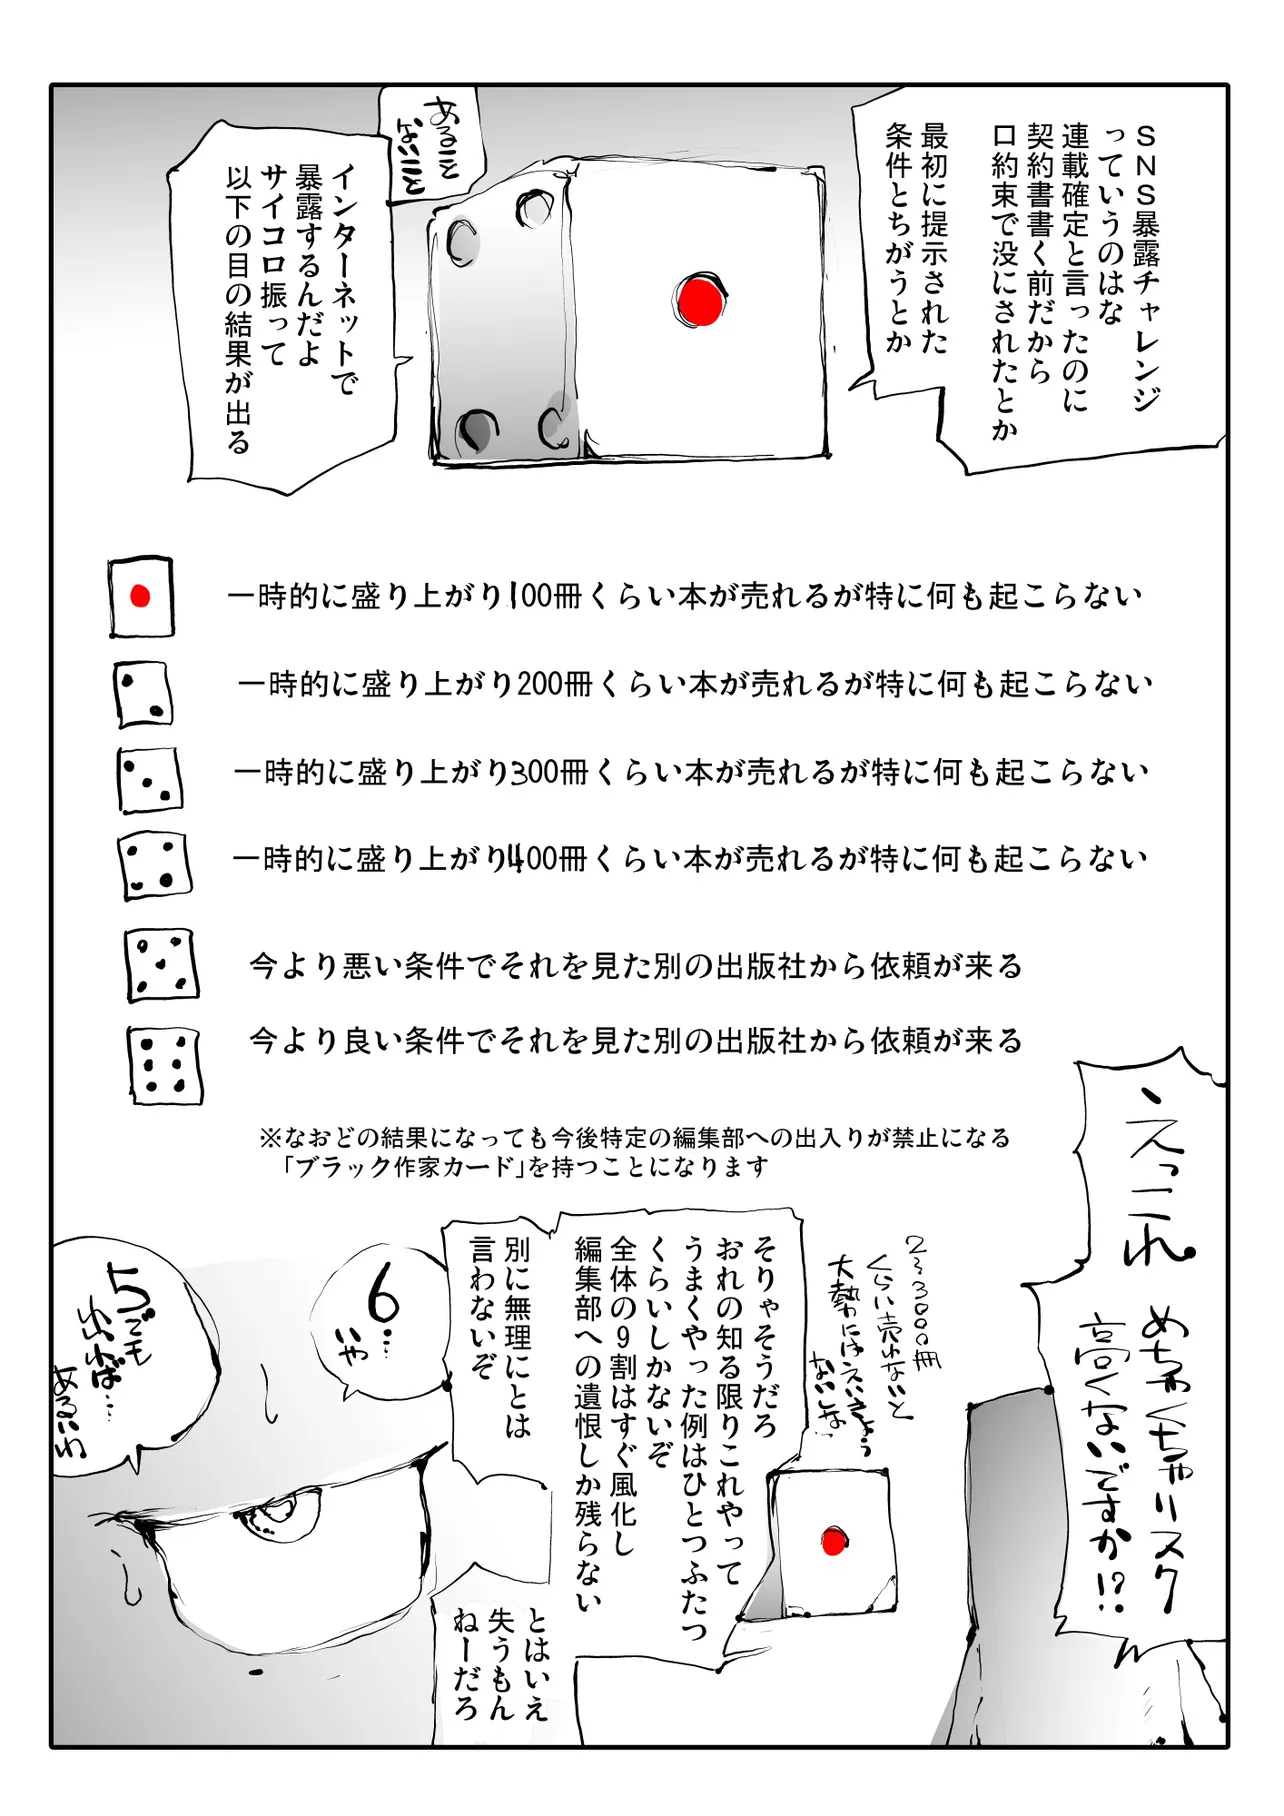 『まんが家すごろく』(25/48)